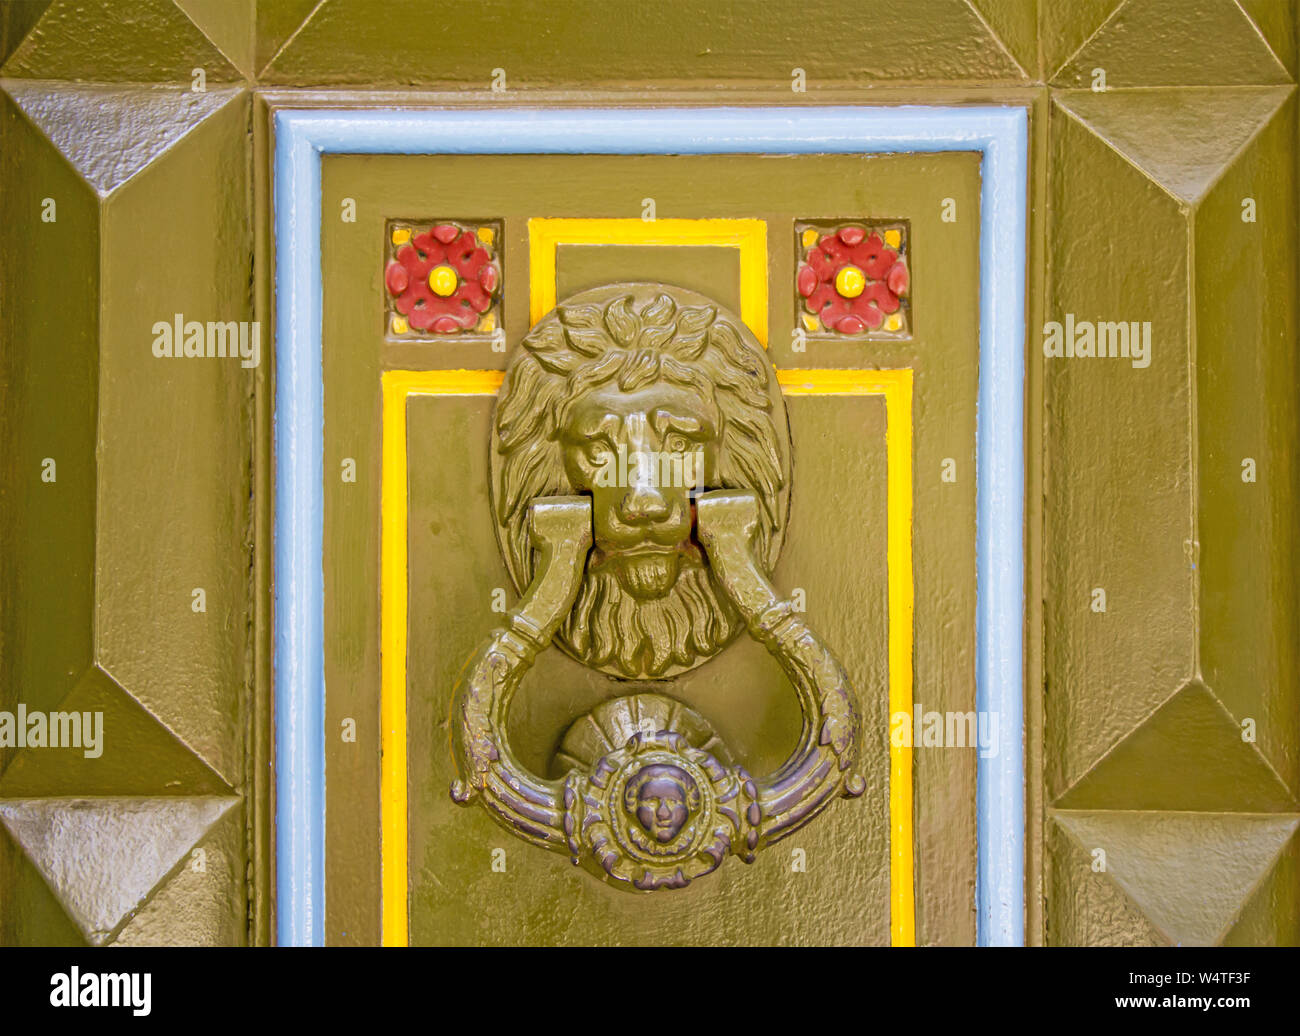 Old metal doorknob in the shape of lion head on old wooden door Stock Photo